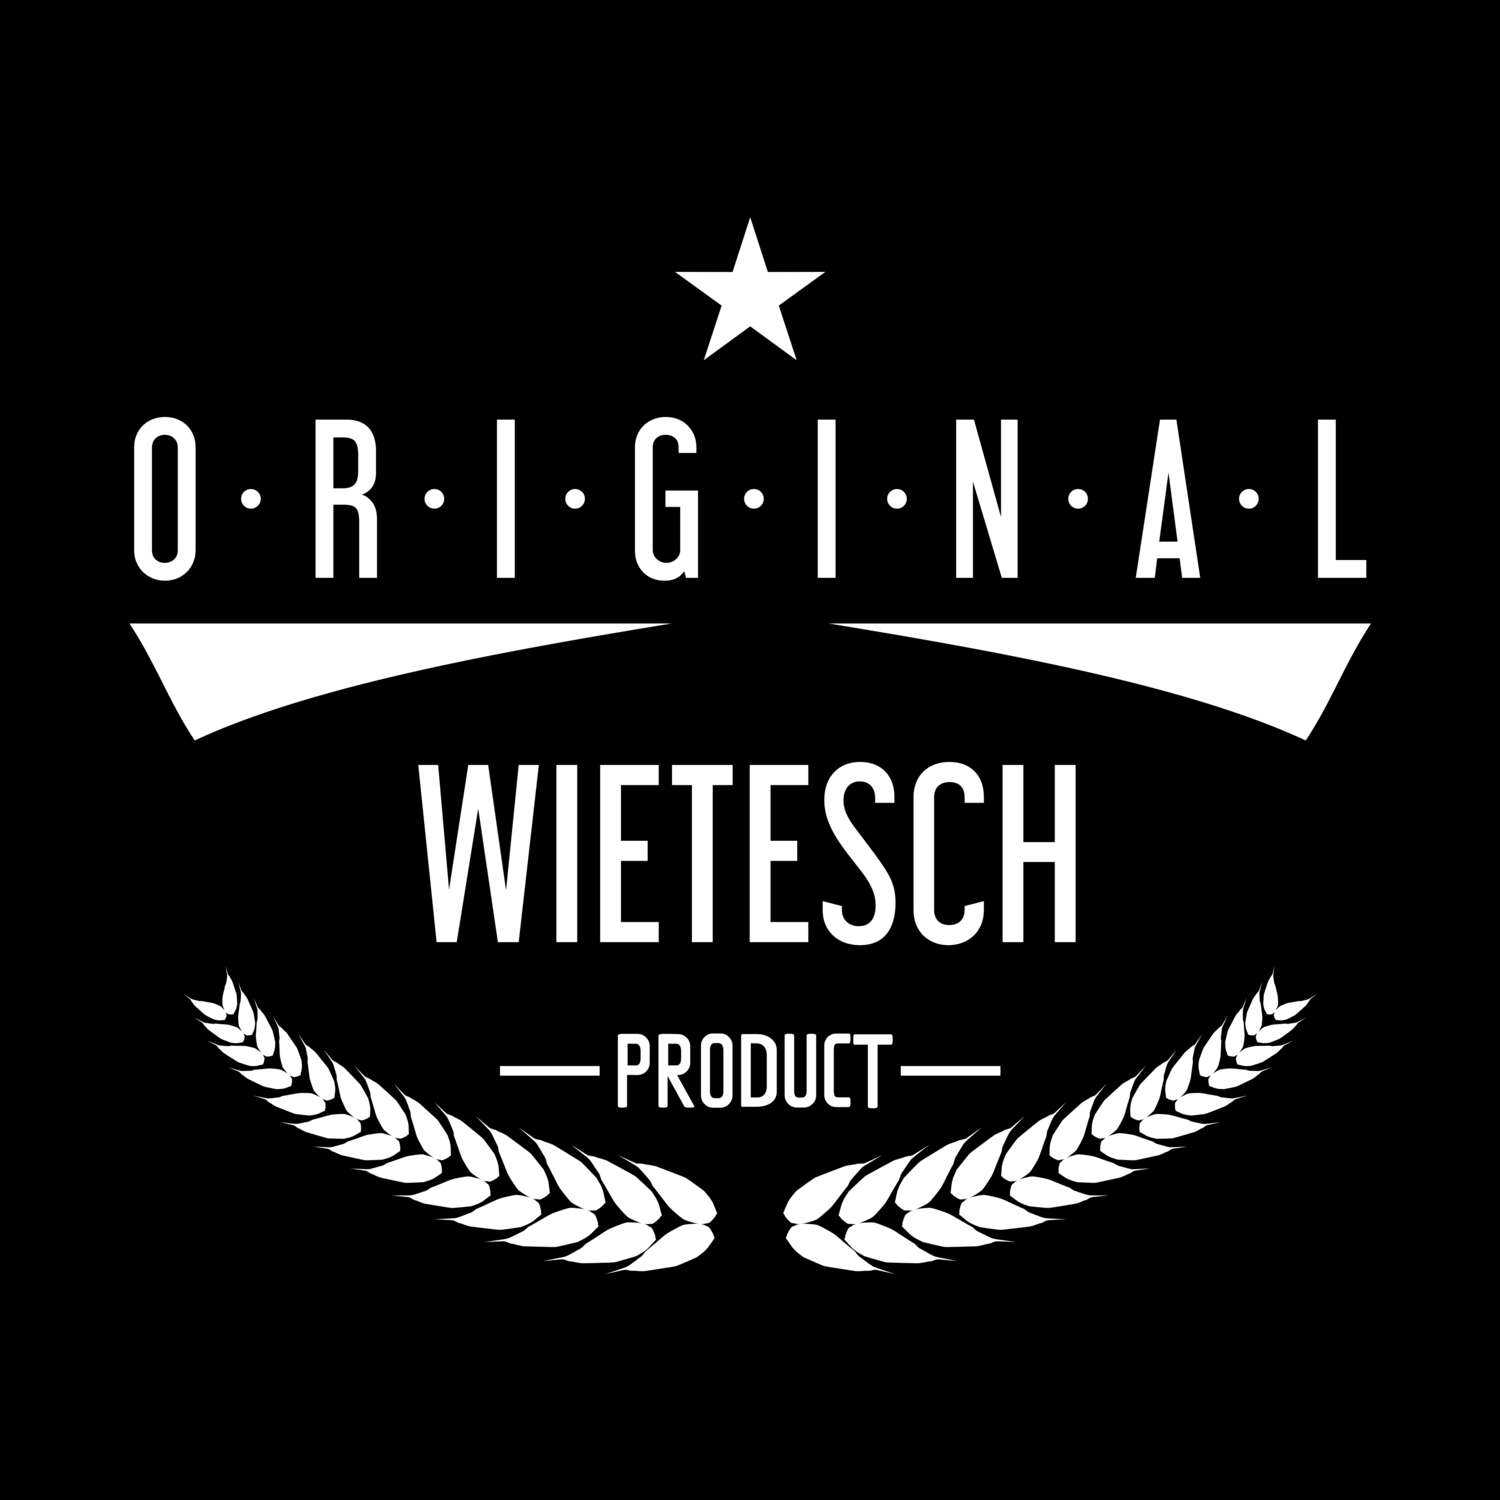 Wietesch T-Shirt »Original Product«